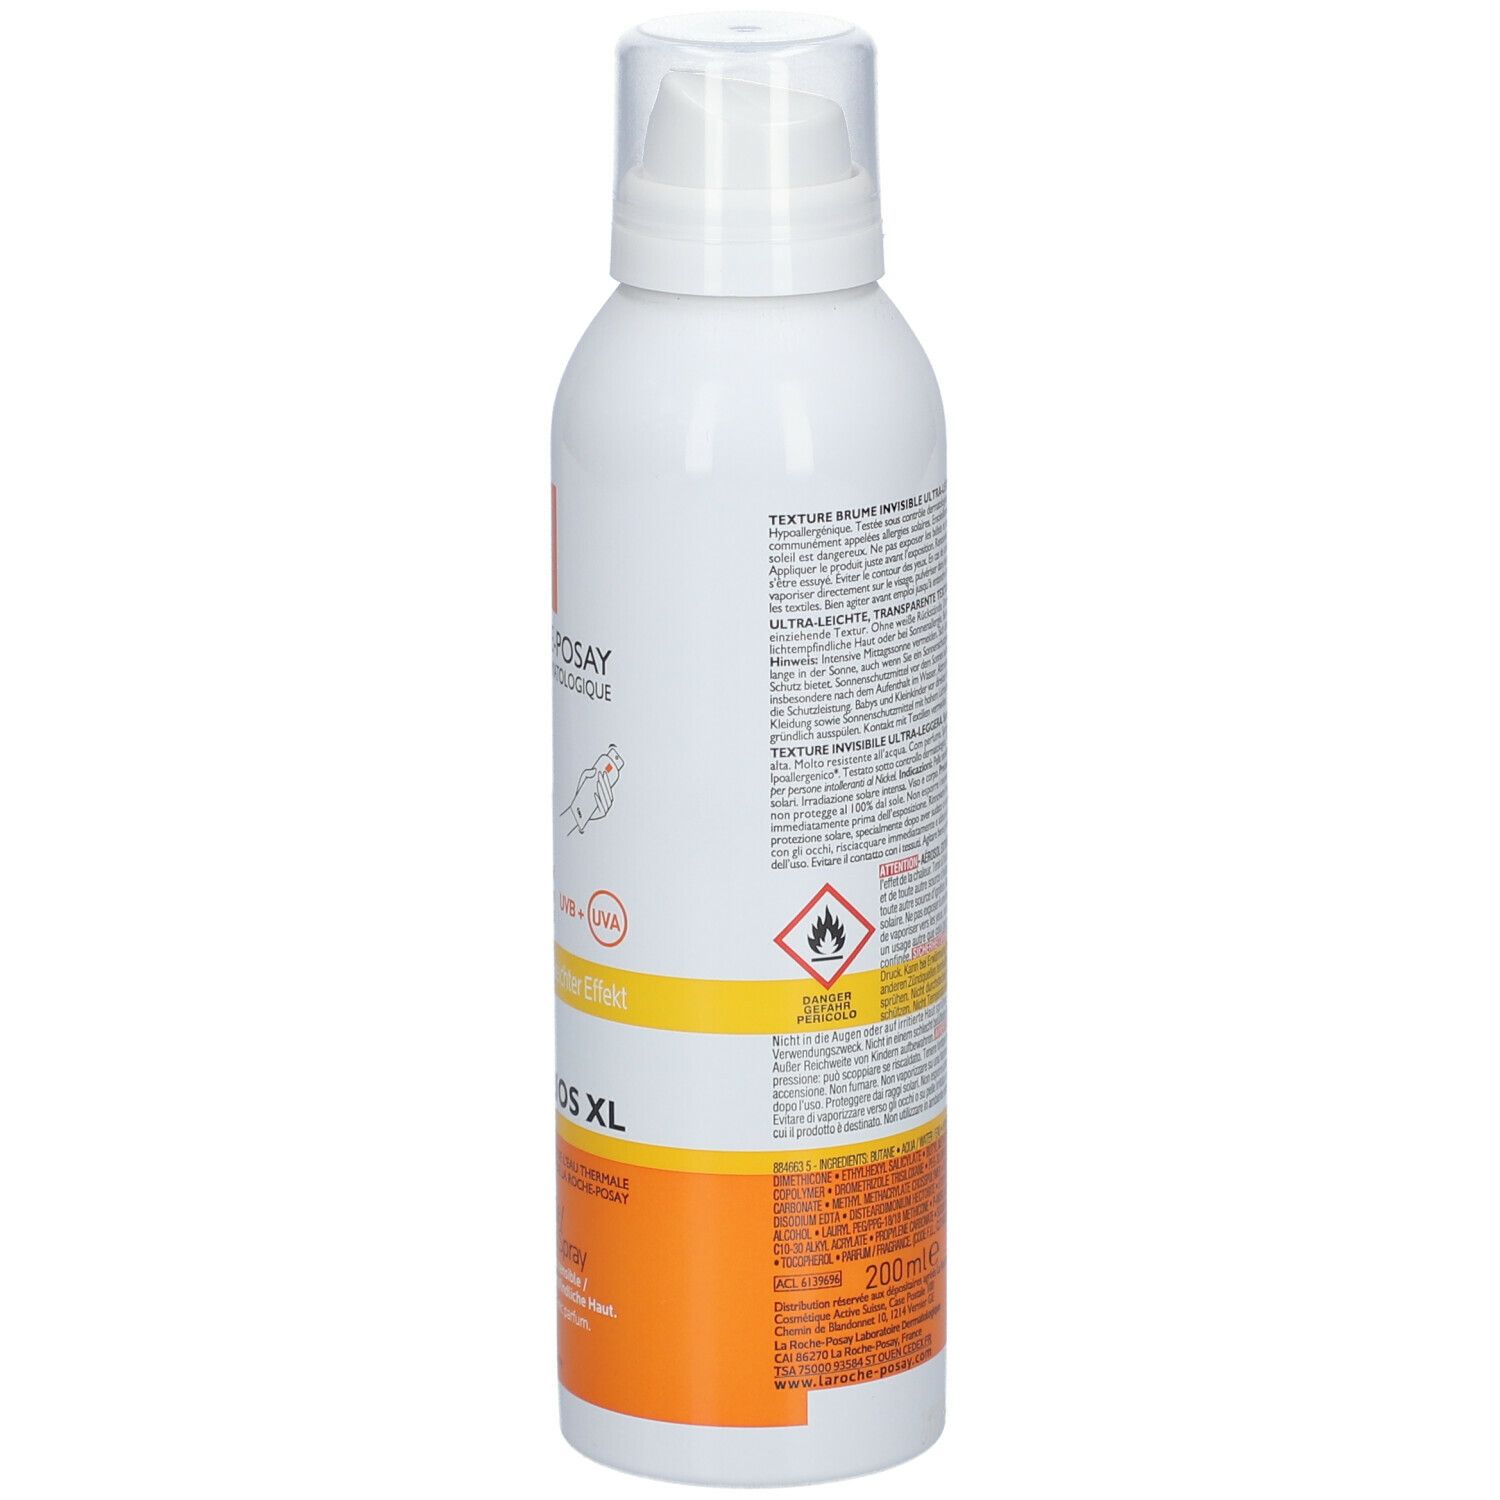 La Roche-Posay Anthelios Spray Protettivo SPF 50+ 200 ml